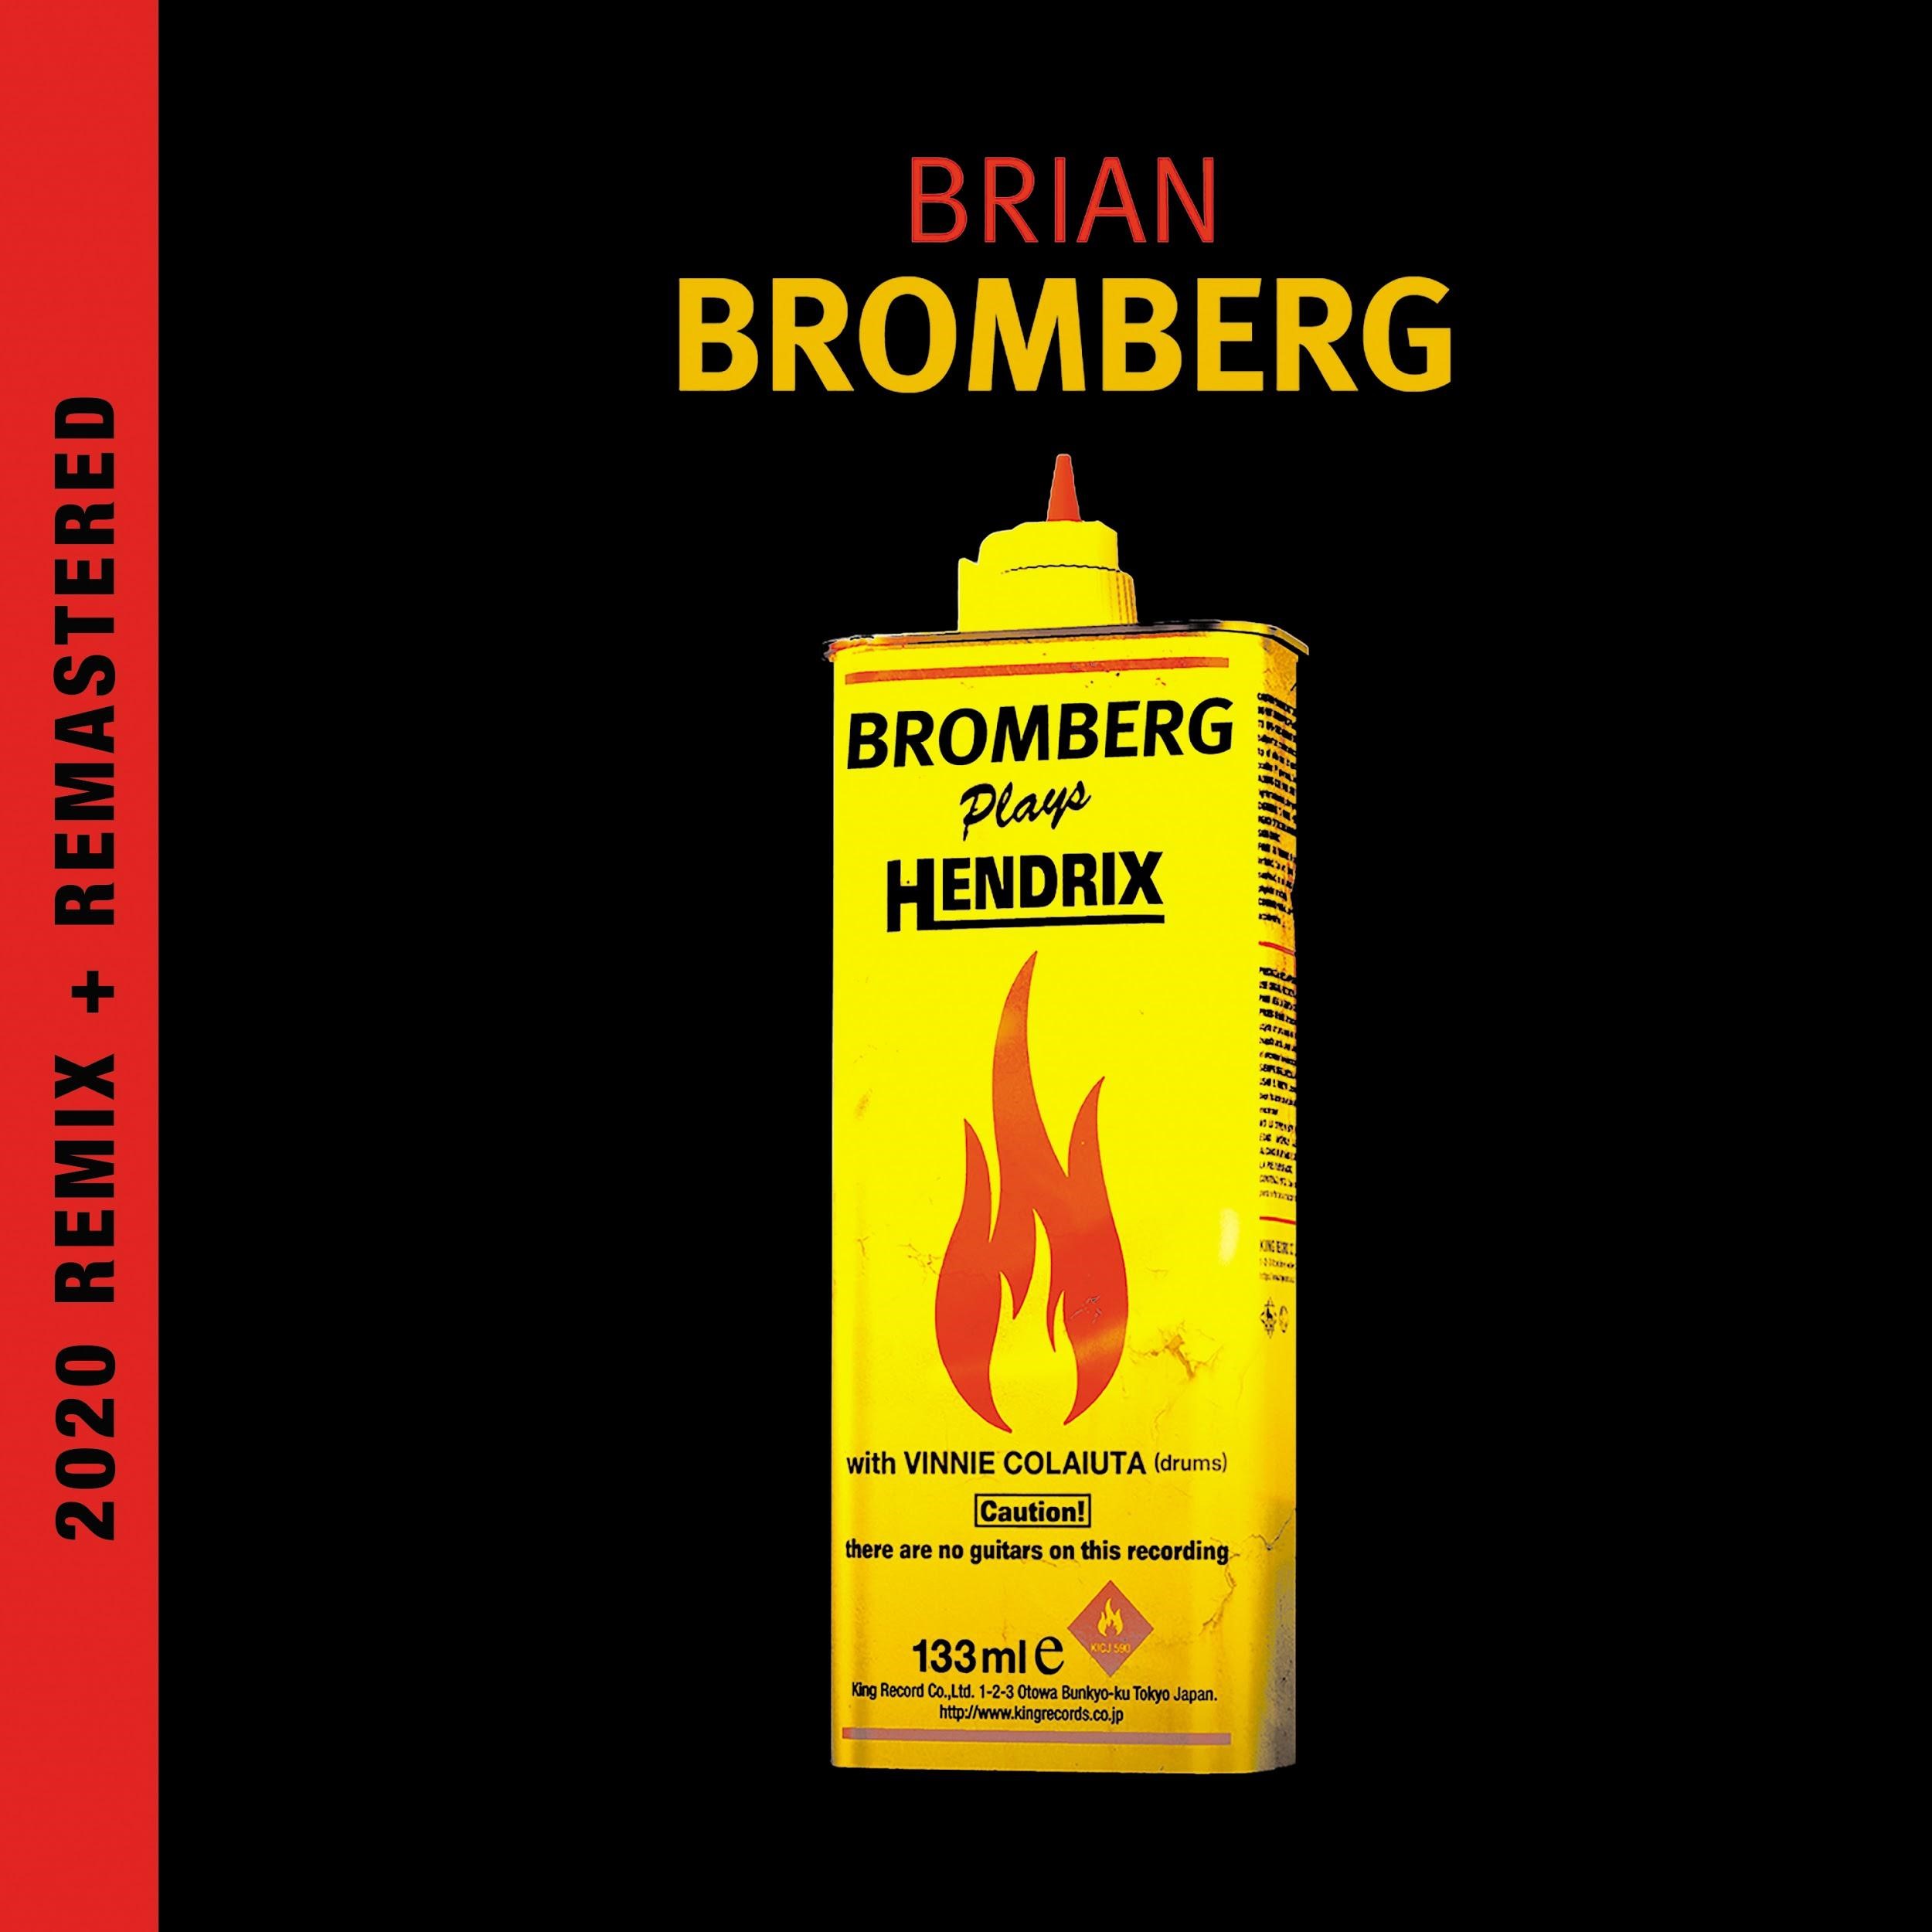 Brian Bromberg Plays Hendrix